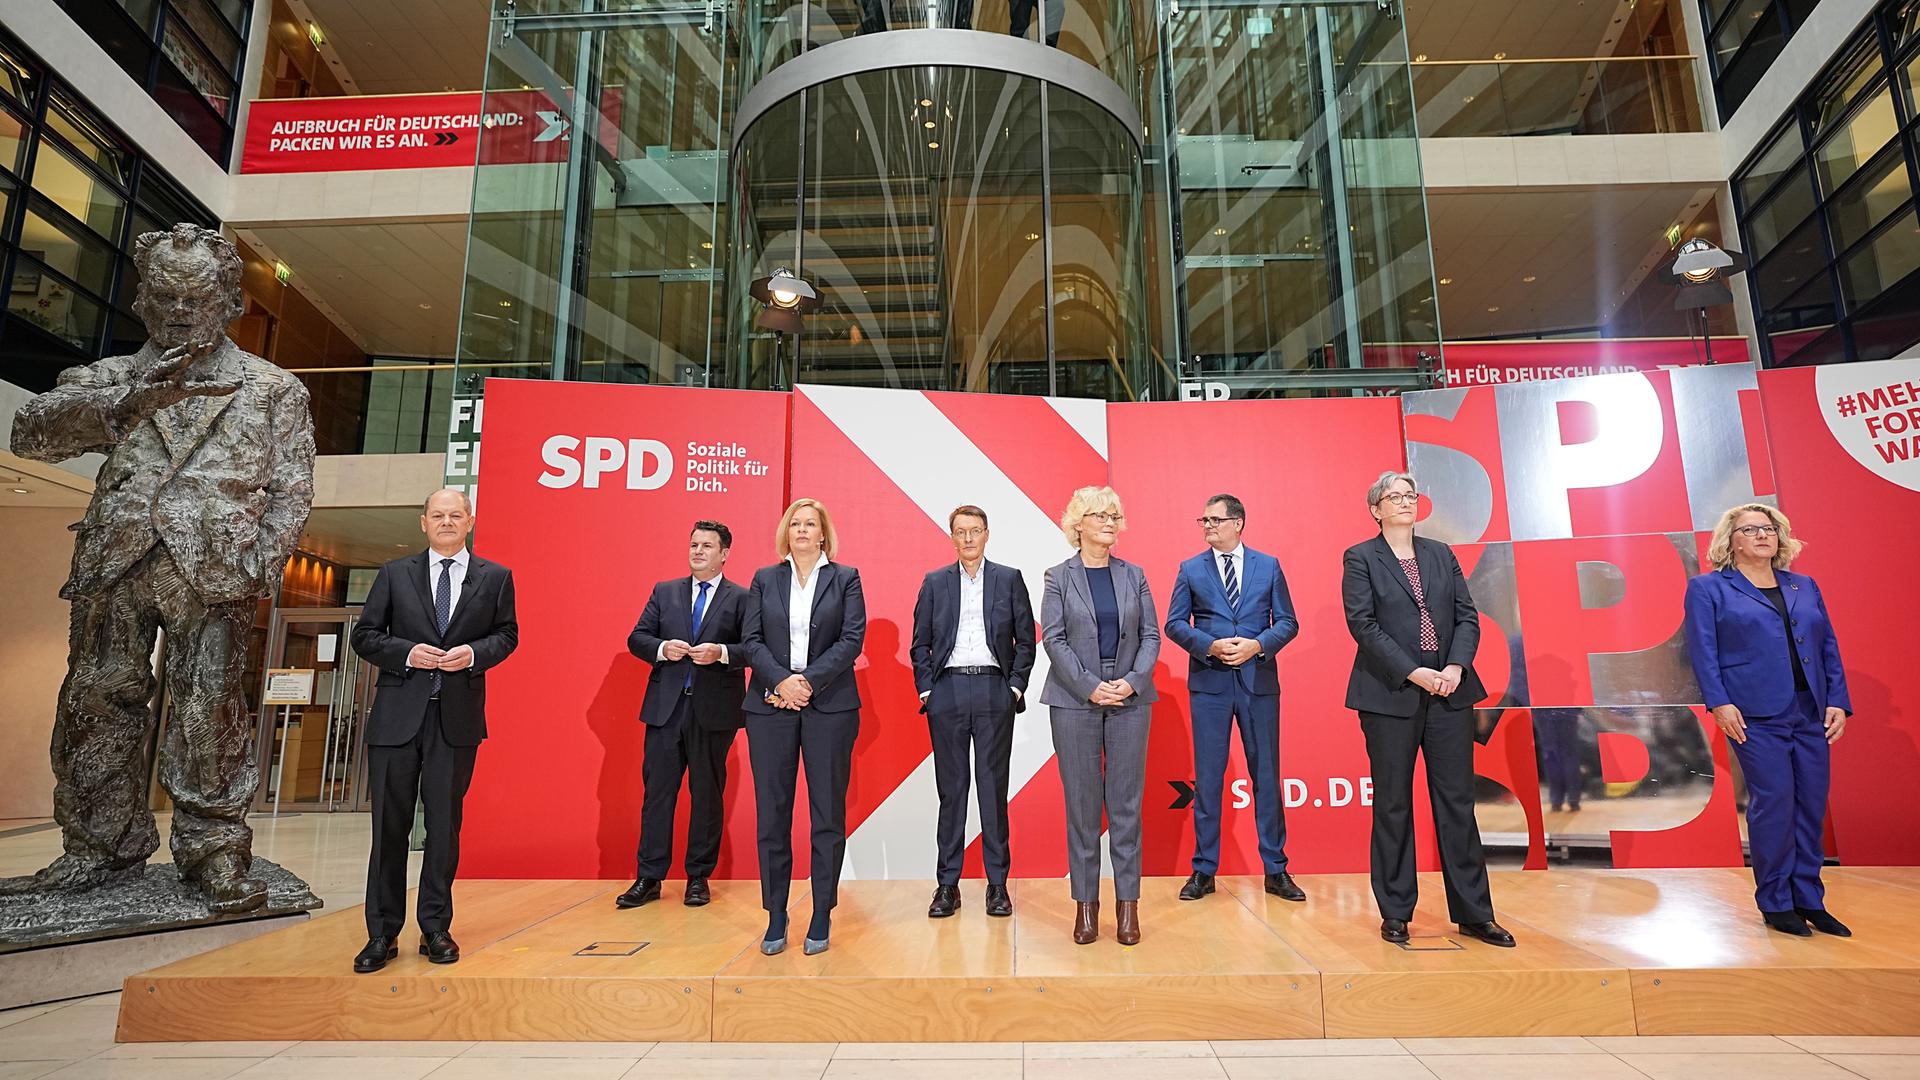 Die neuen Ministerinnen und Minister der SPD stehen auf der Bühne.